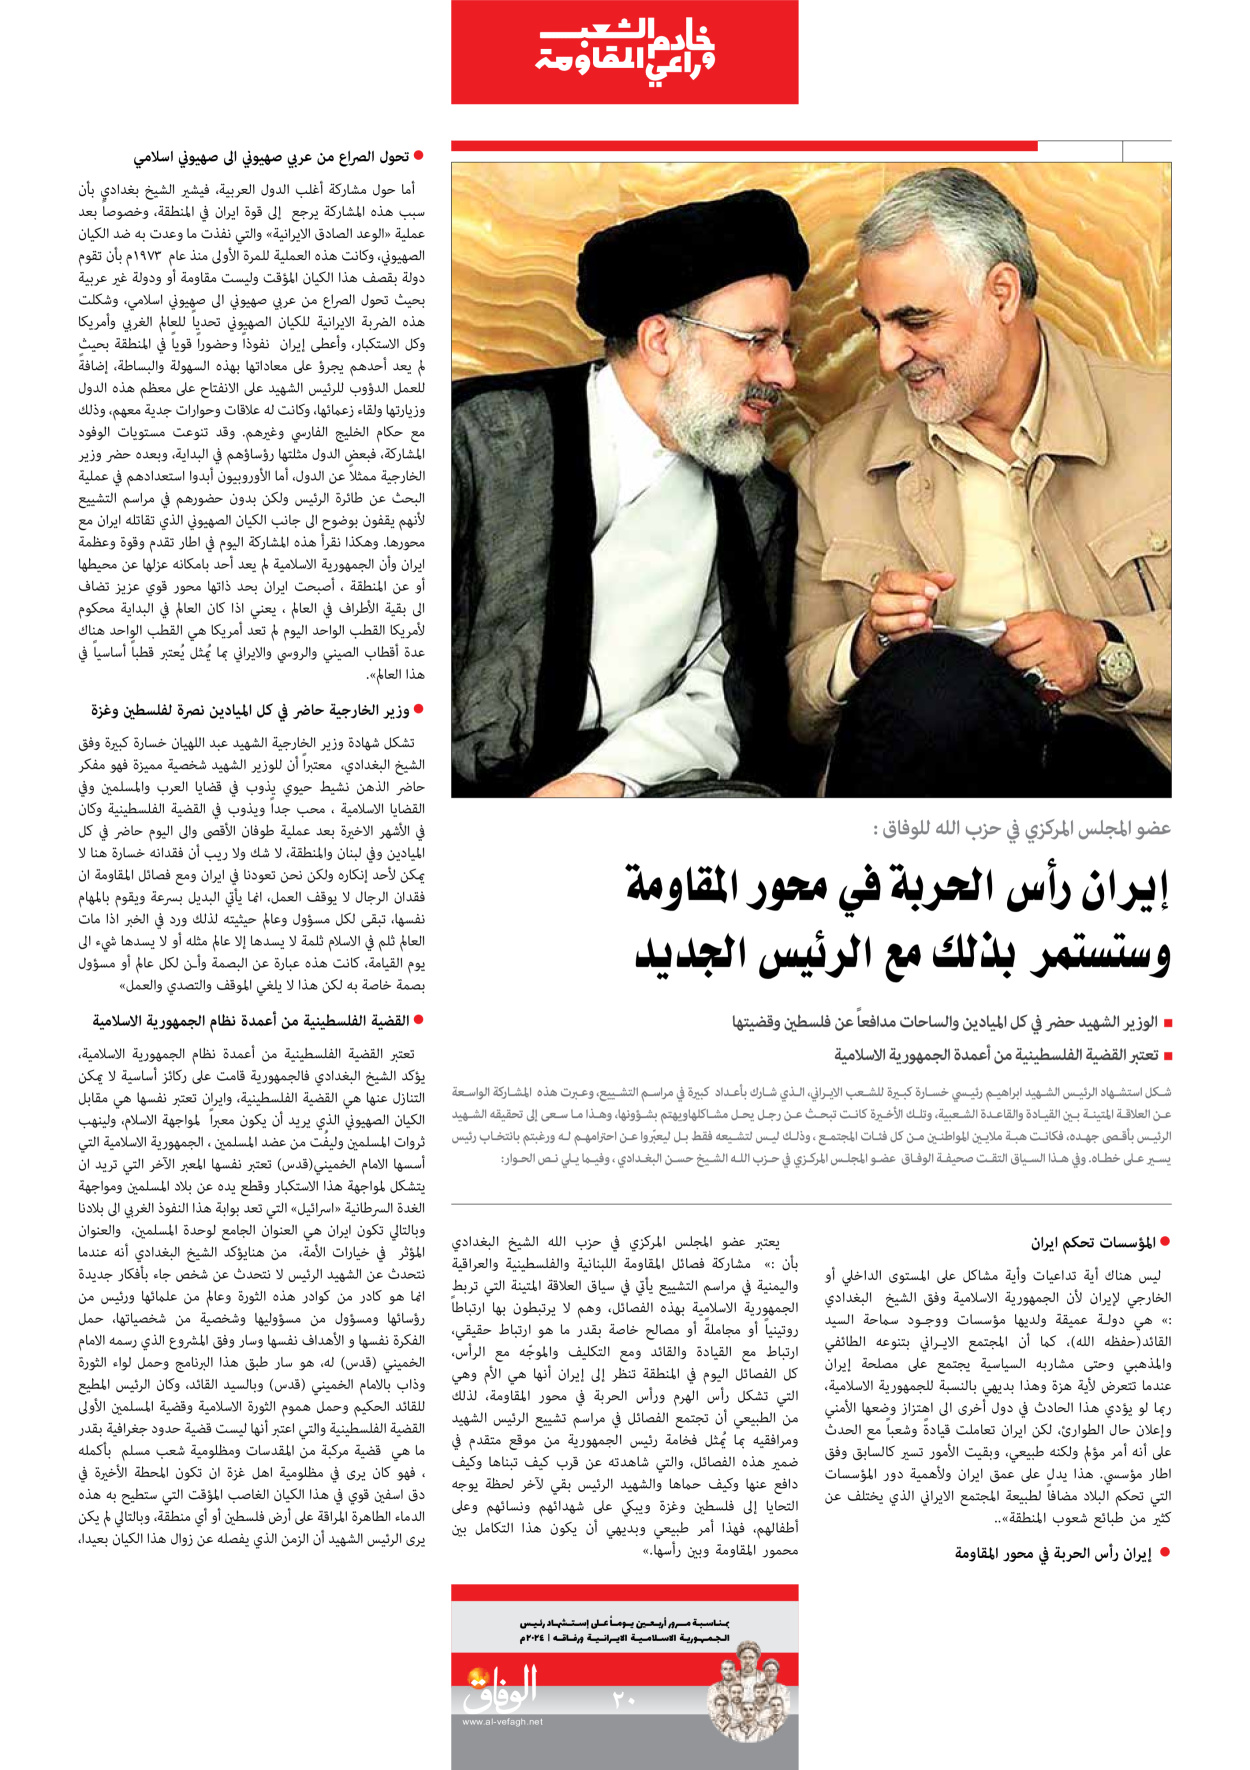 صحیفة ایران الدولیة الوفاق - ملحق ویژه نامه چهلم شهید رییسی - ٢٩ يونيو ٢٠٢٤ - الصفحة ۲۰